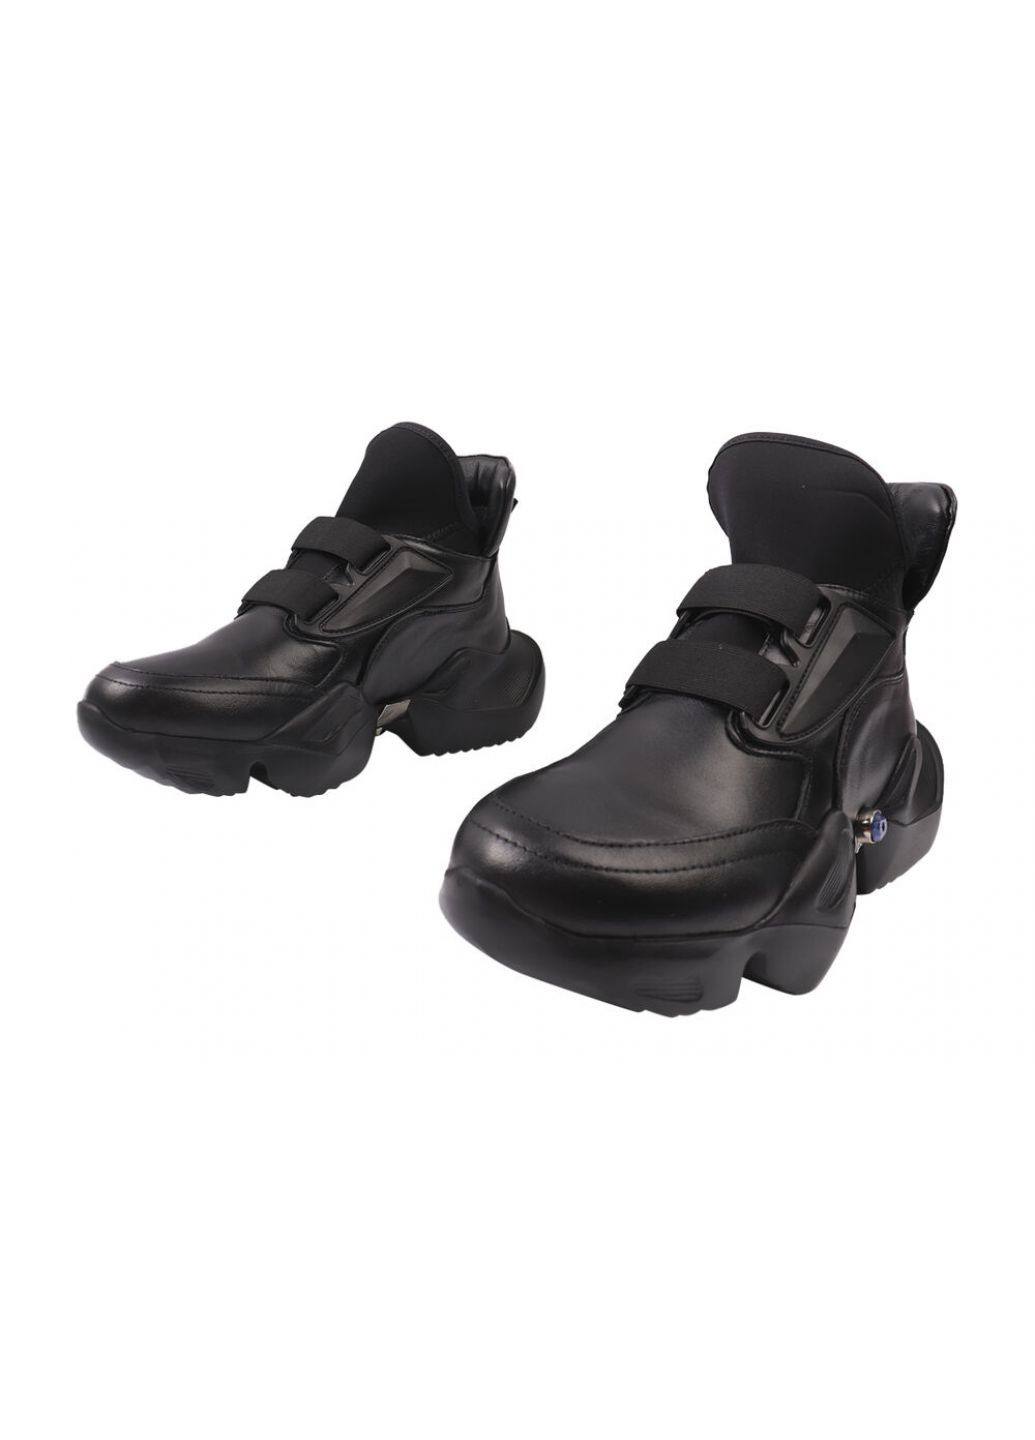 Черные ботинки женские из натуральной кожы,на платформе,высокие,черные,на резинке,турция Molly Bessa 236-20DK